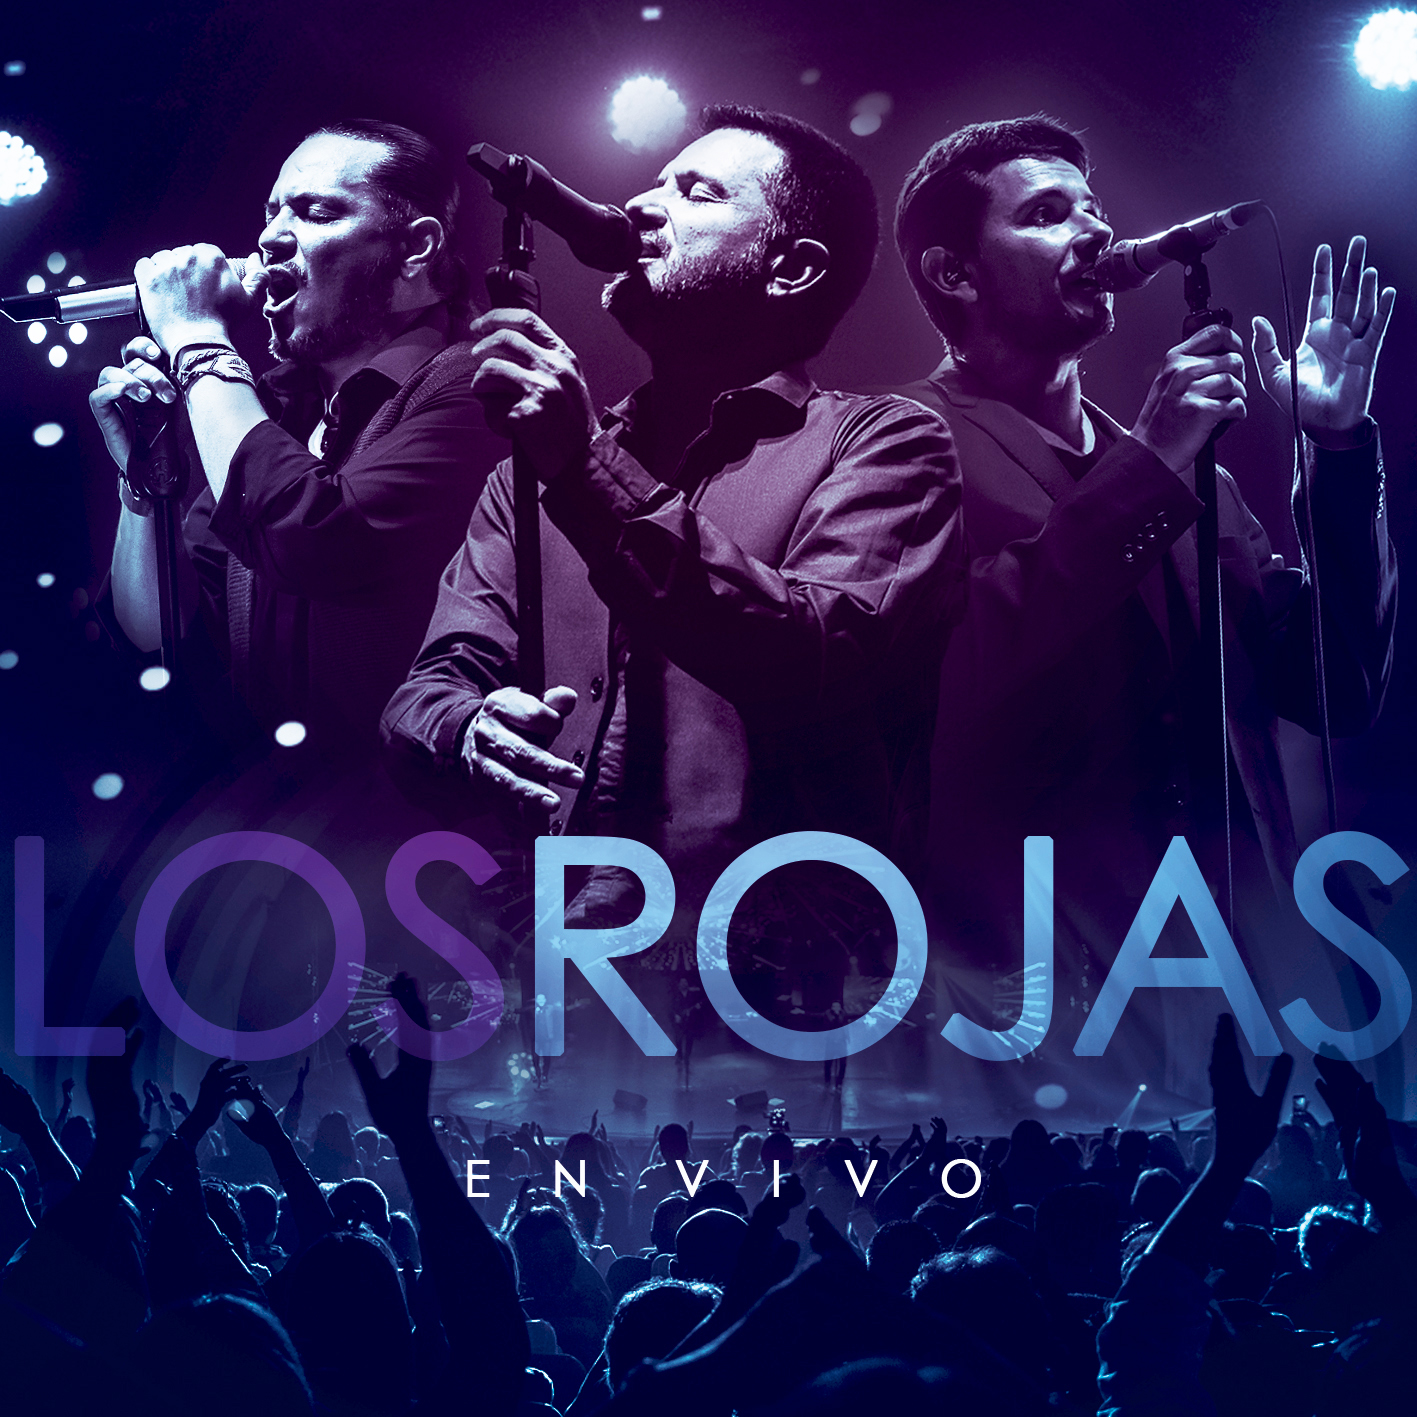 Los Rojas en vivo - Obras Jorge Rosas